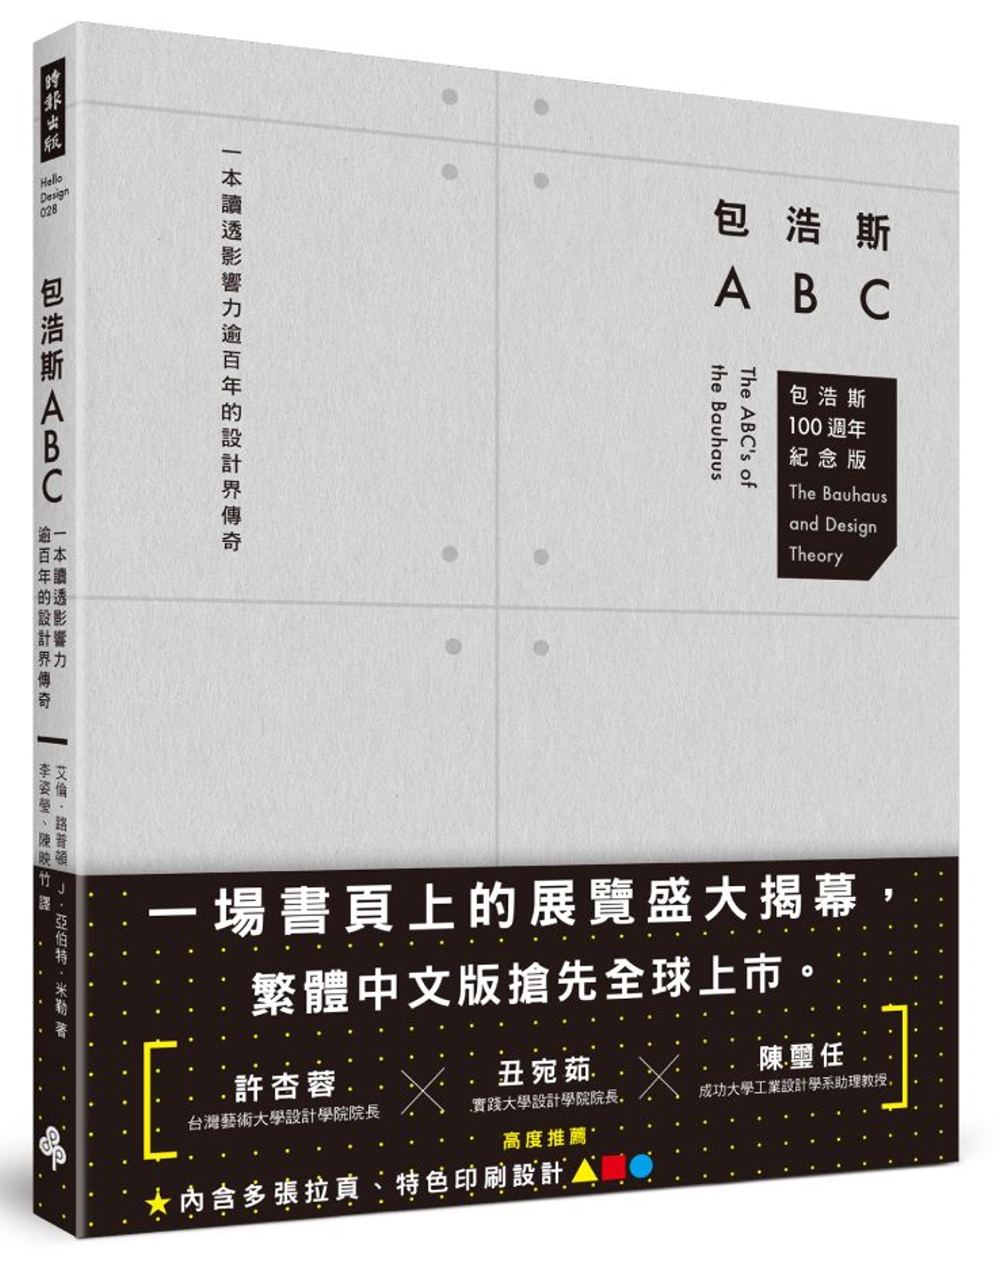 包浩斯ABC：一本讀透影響力逾百年的設計界傳奇(包浩斯 100 週年紀念版)